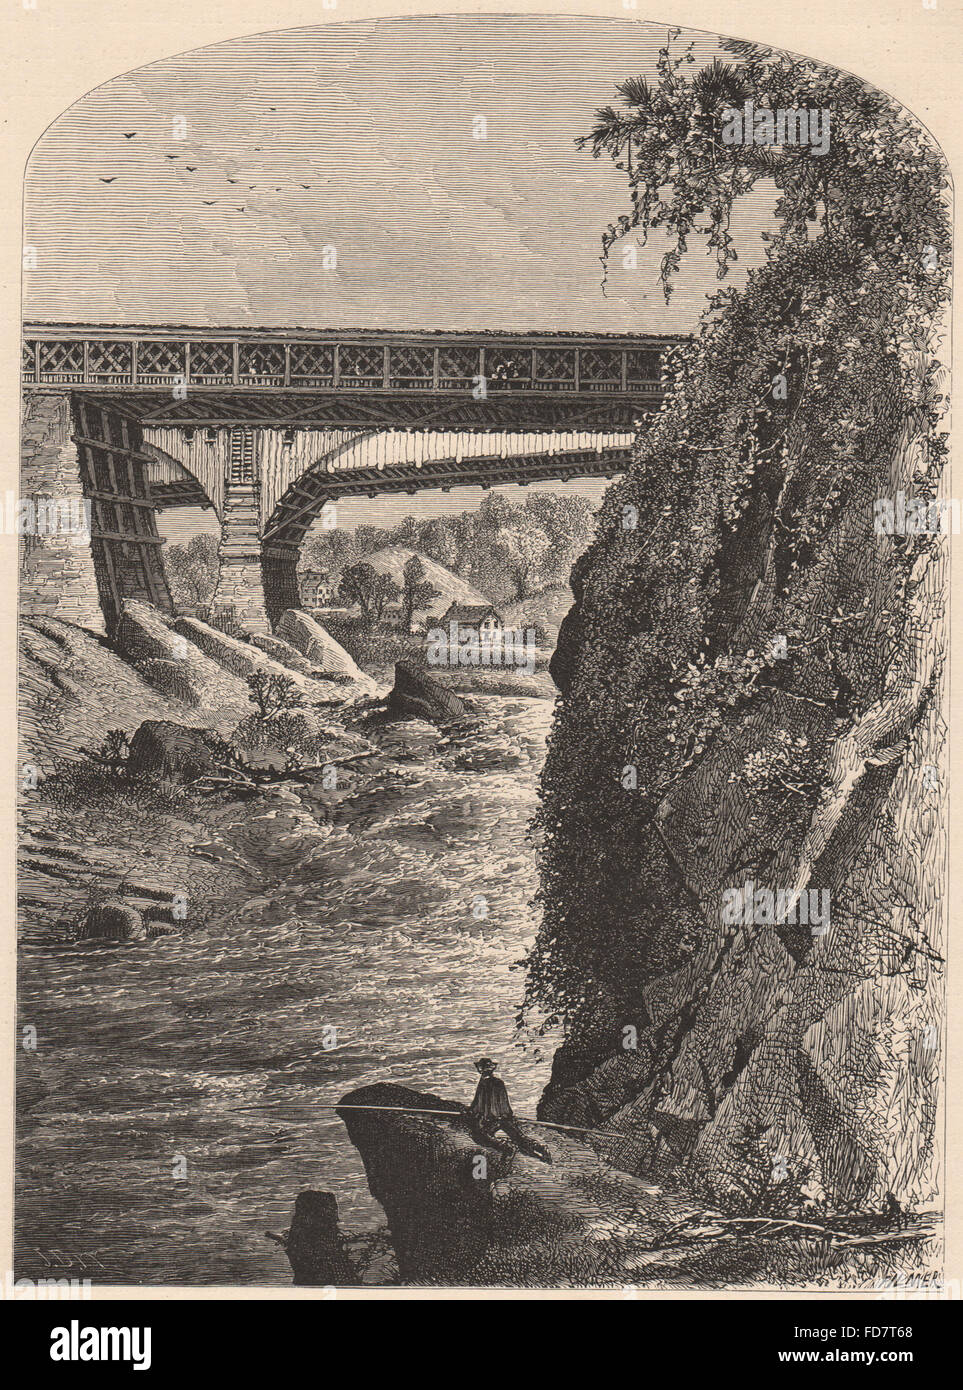 VERMONT : Bellows Falls, antique print 1874 Banque D'Images